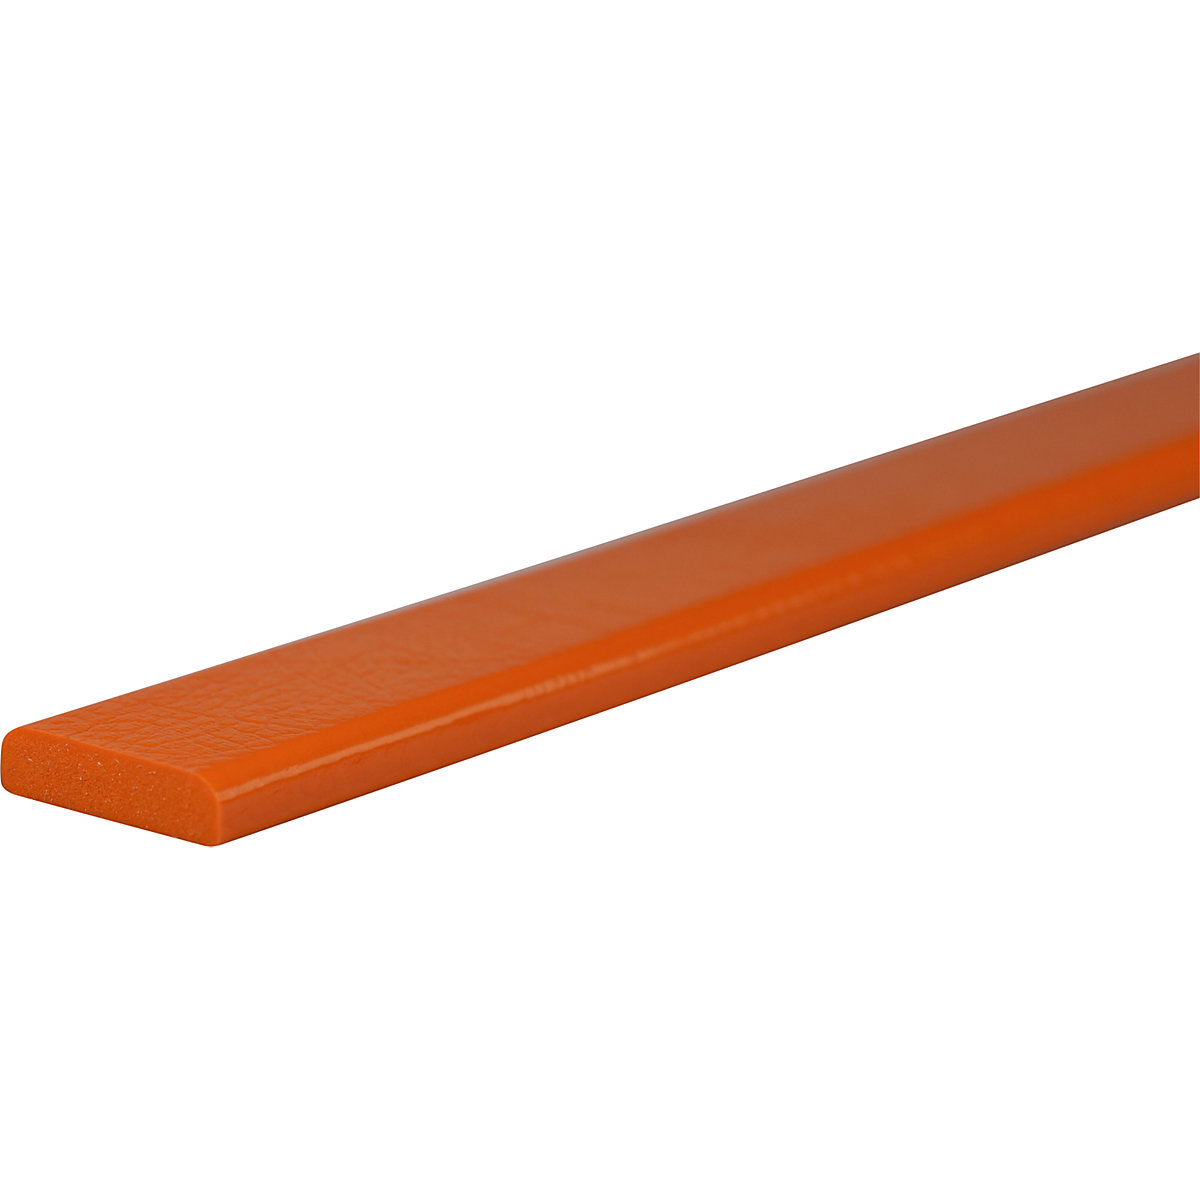 Knuffi®-oppervlaktebescherming – SHG, type F, stuk van 1 m, oranje-37